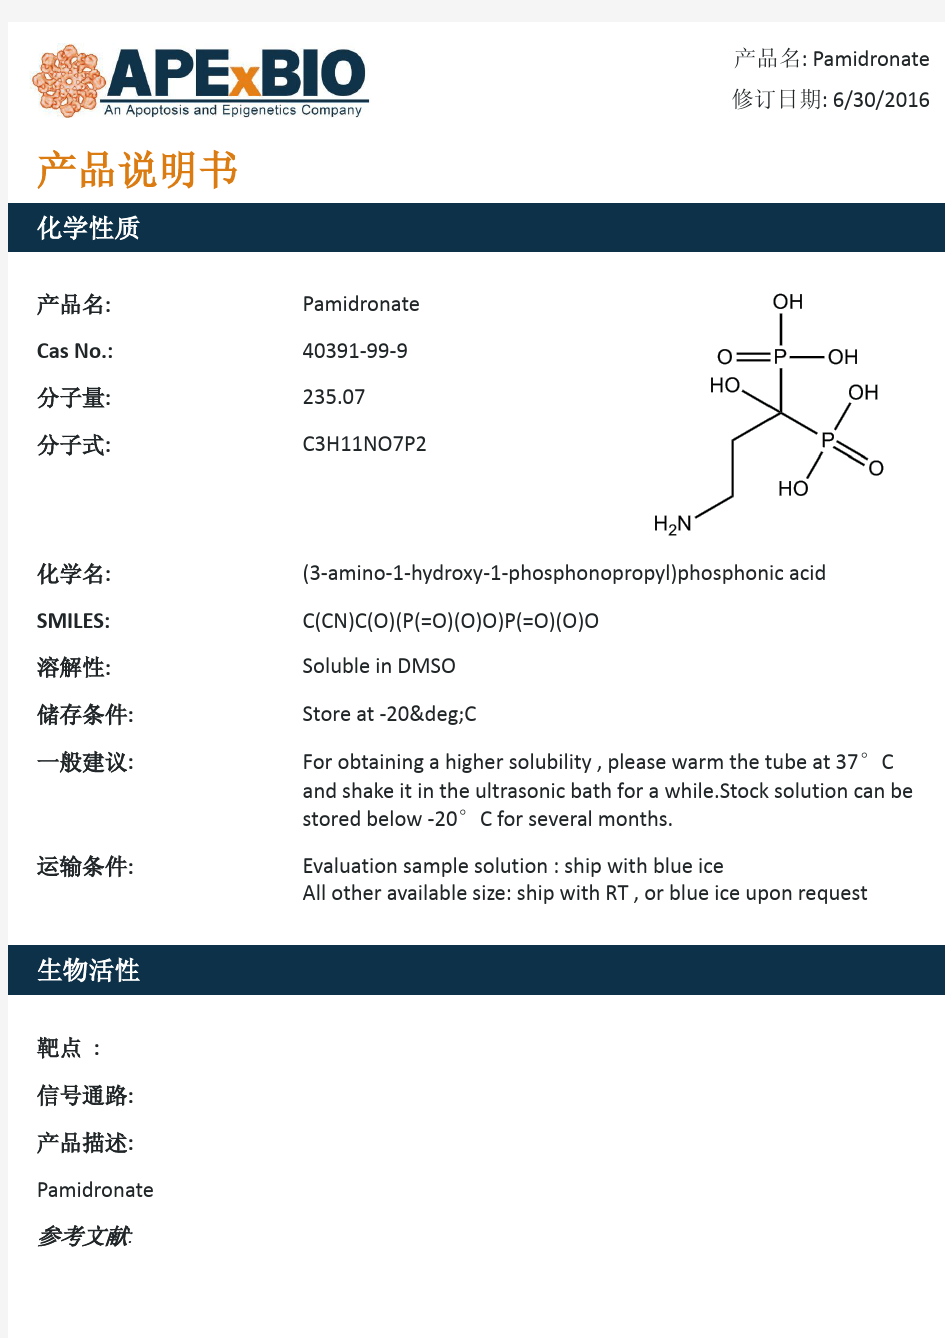 Pamidronate_双磷酸盐类支持性护理药物_40391-99-9_Apexbio